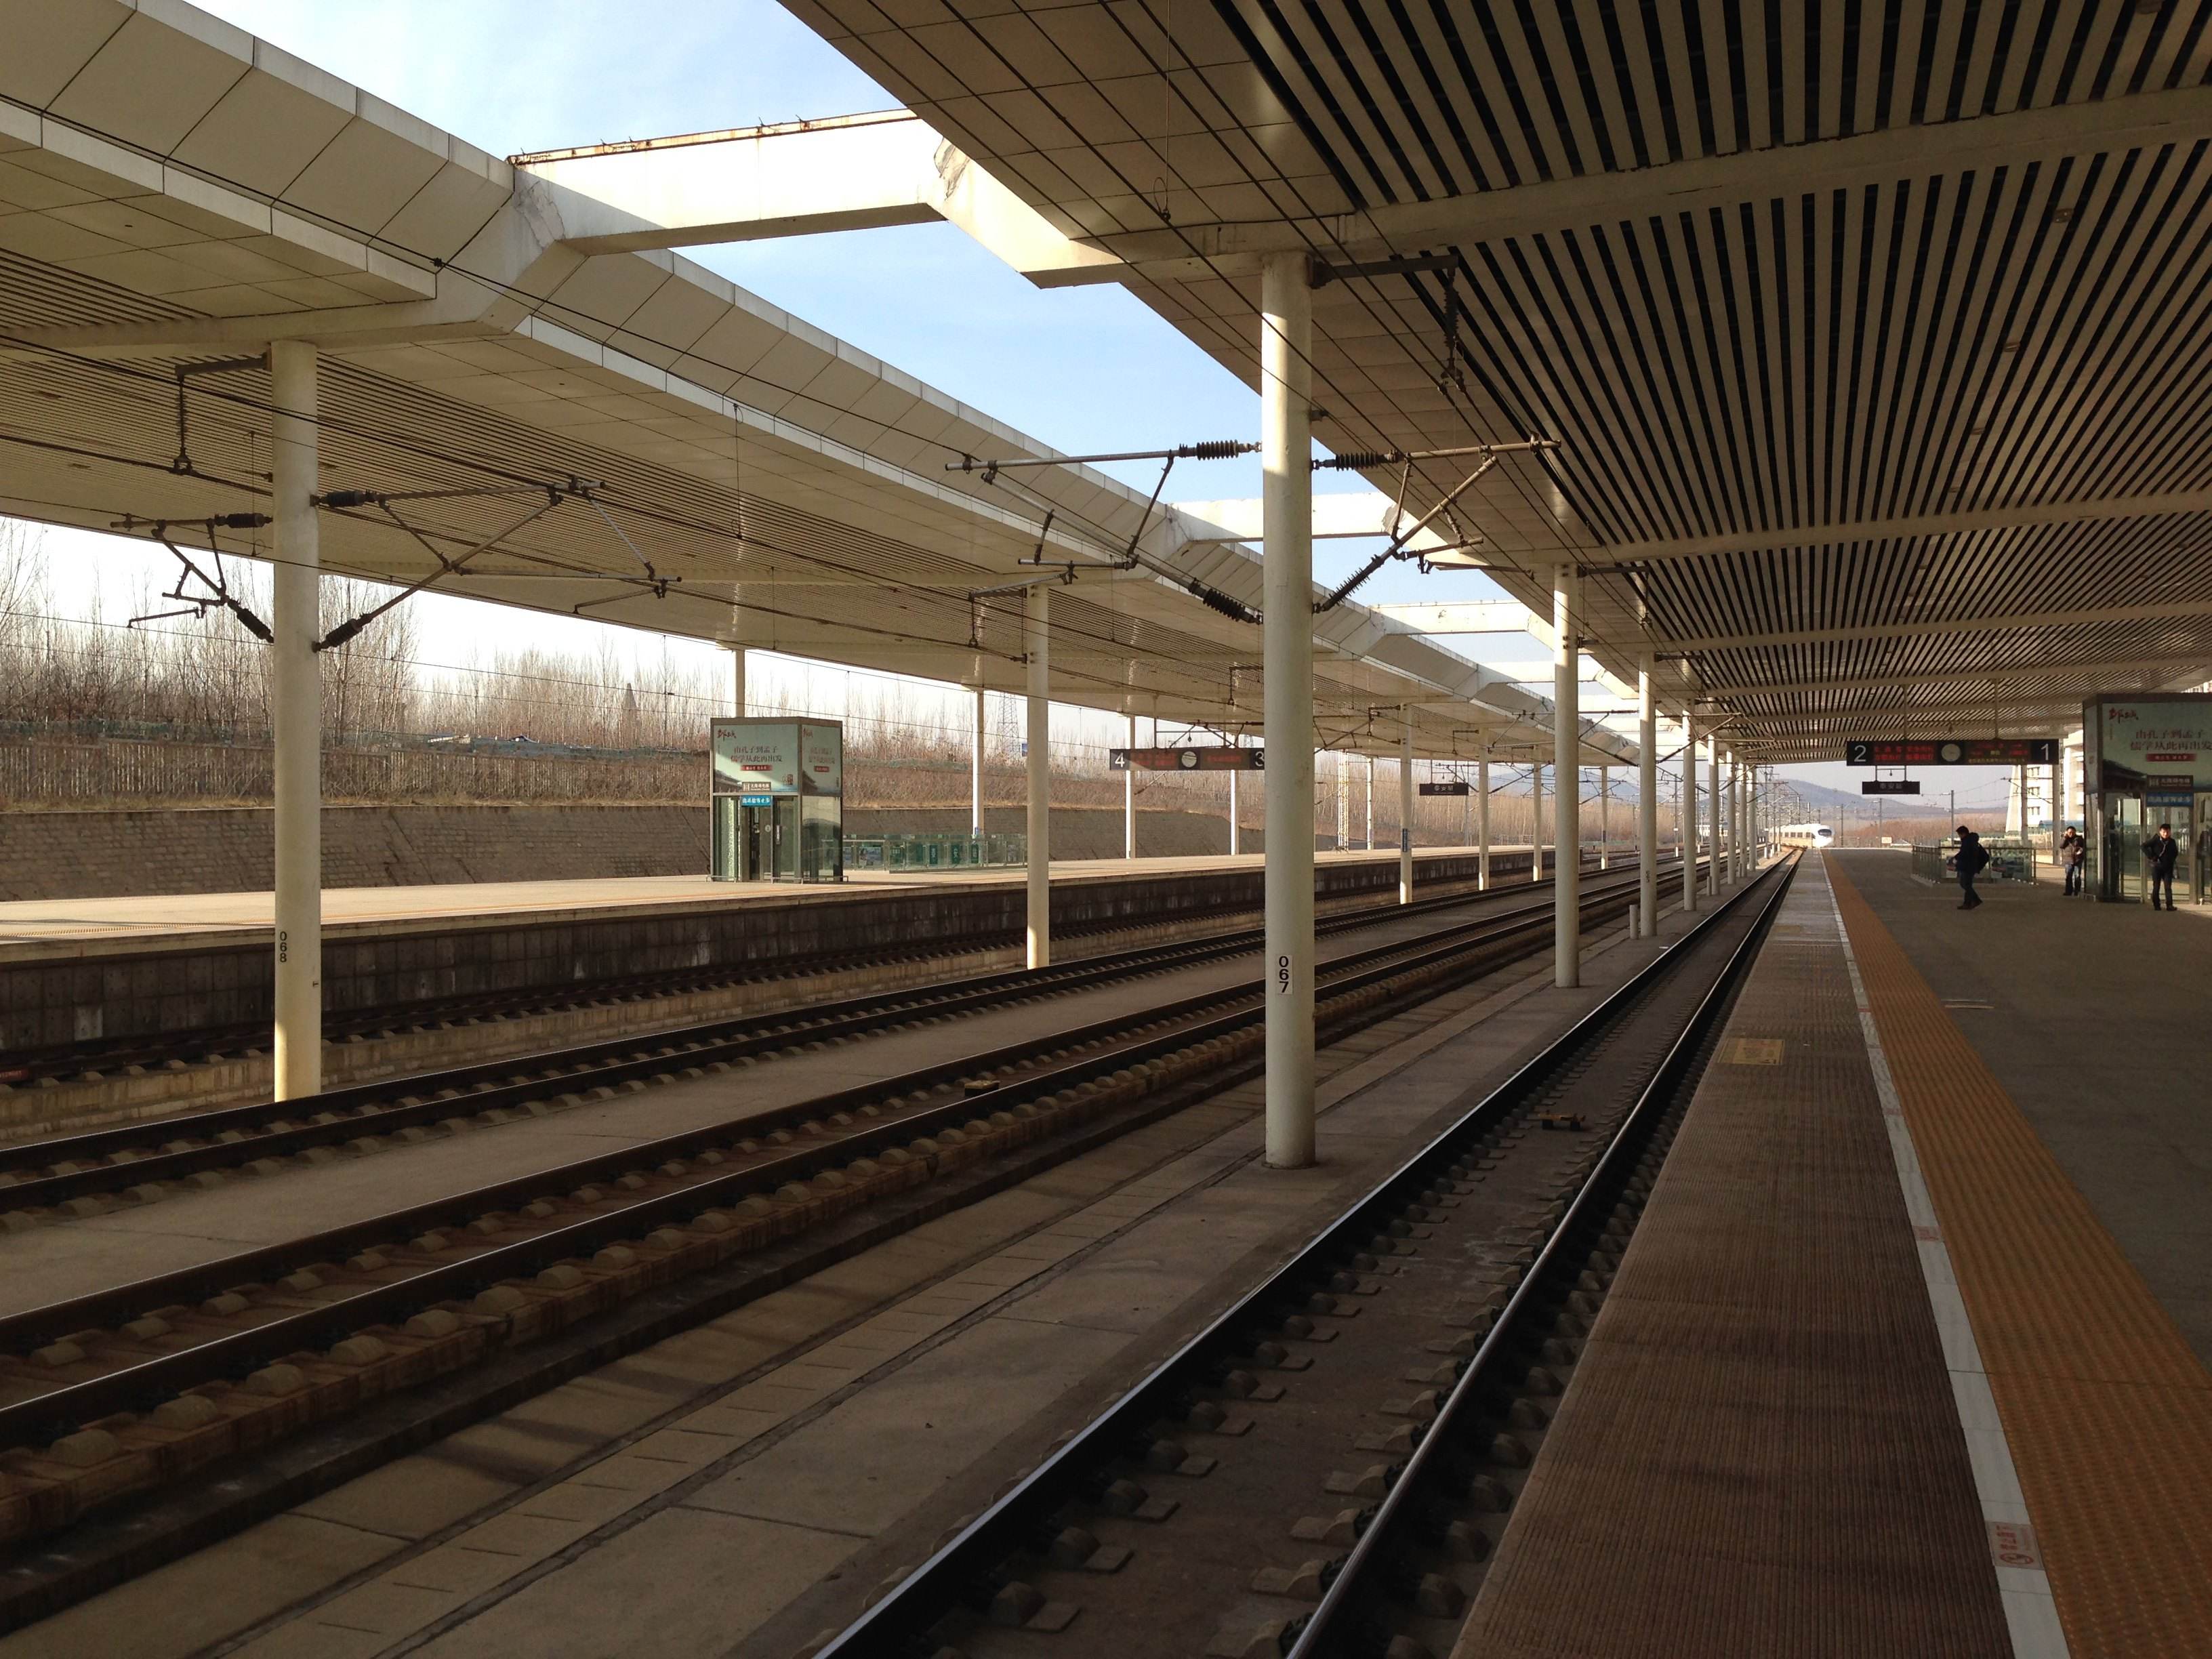 甘肃榆中高铁站经停车次再减,初设38趟现至多3趟